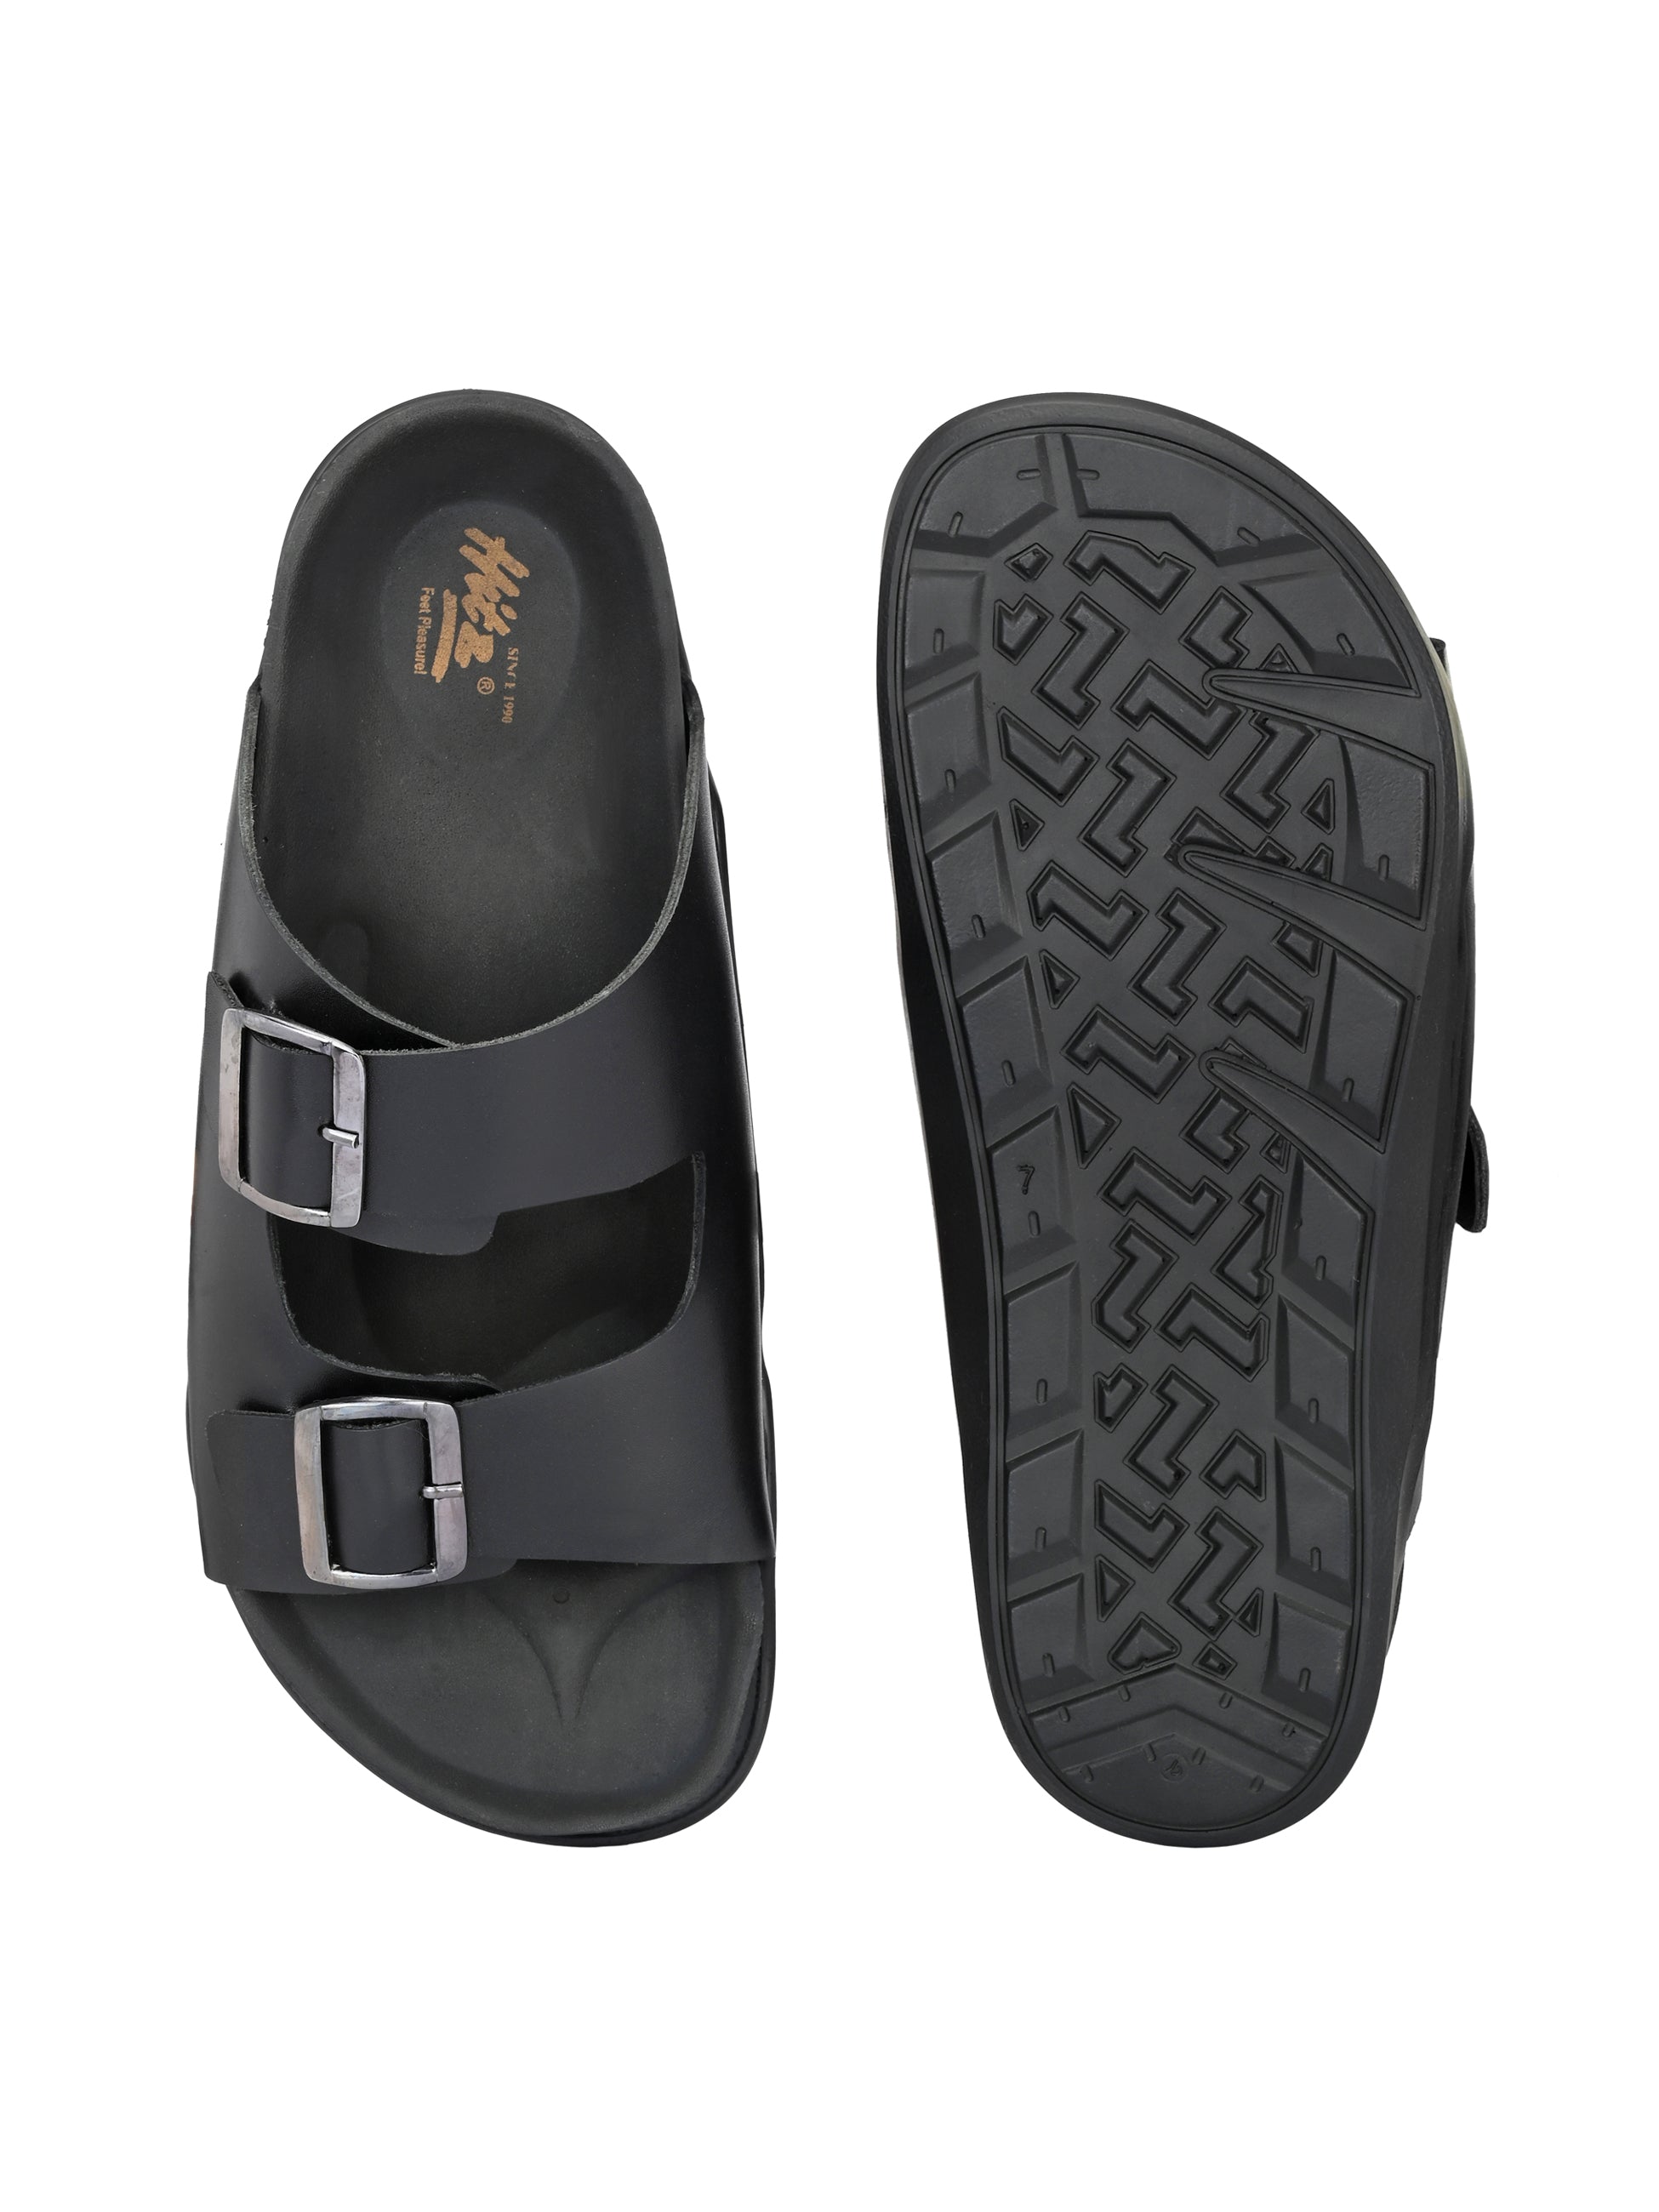 HITZ Black Leather Sandals For Men's – Hitz Shoes Online